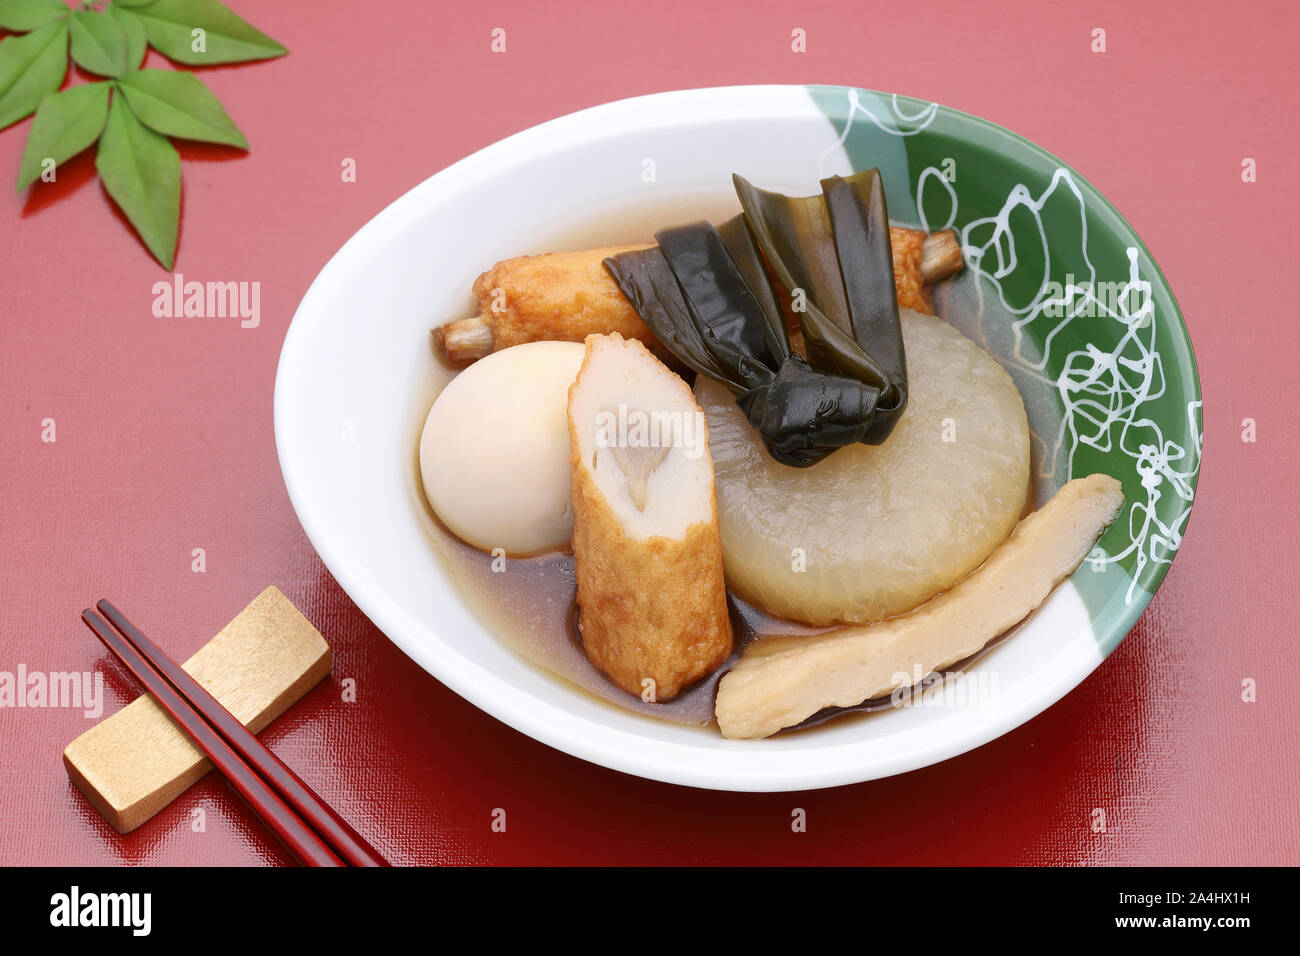 https://c8.alamy.com/comp/2A4HX1H/japanese-food-oden-in-a-ceramic-bowl-2A4HX1H.jpg